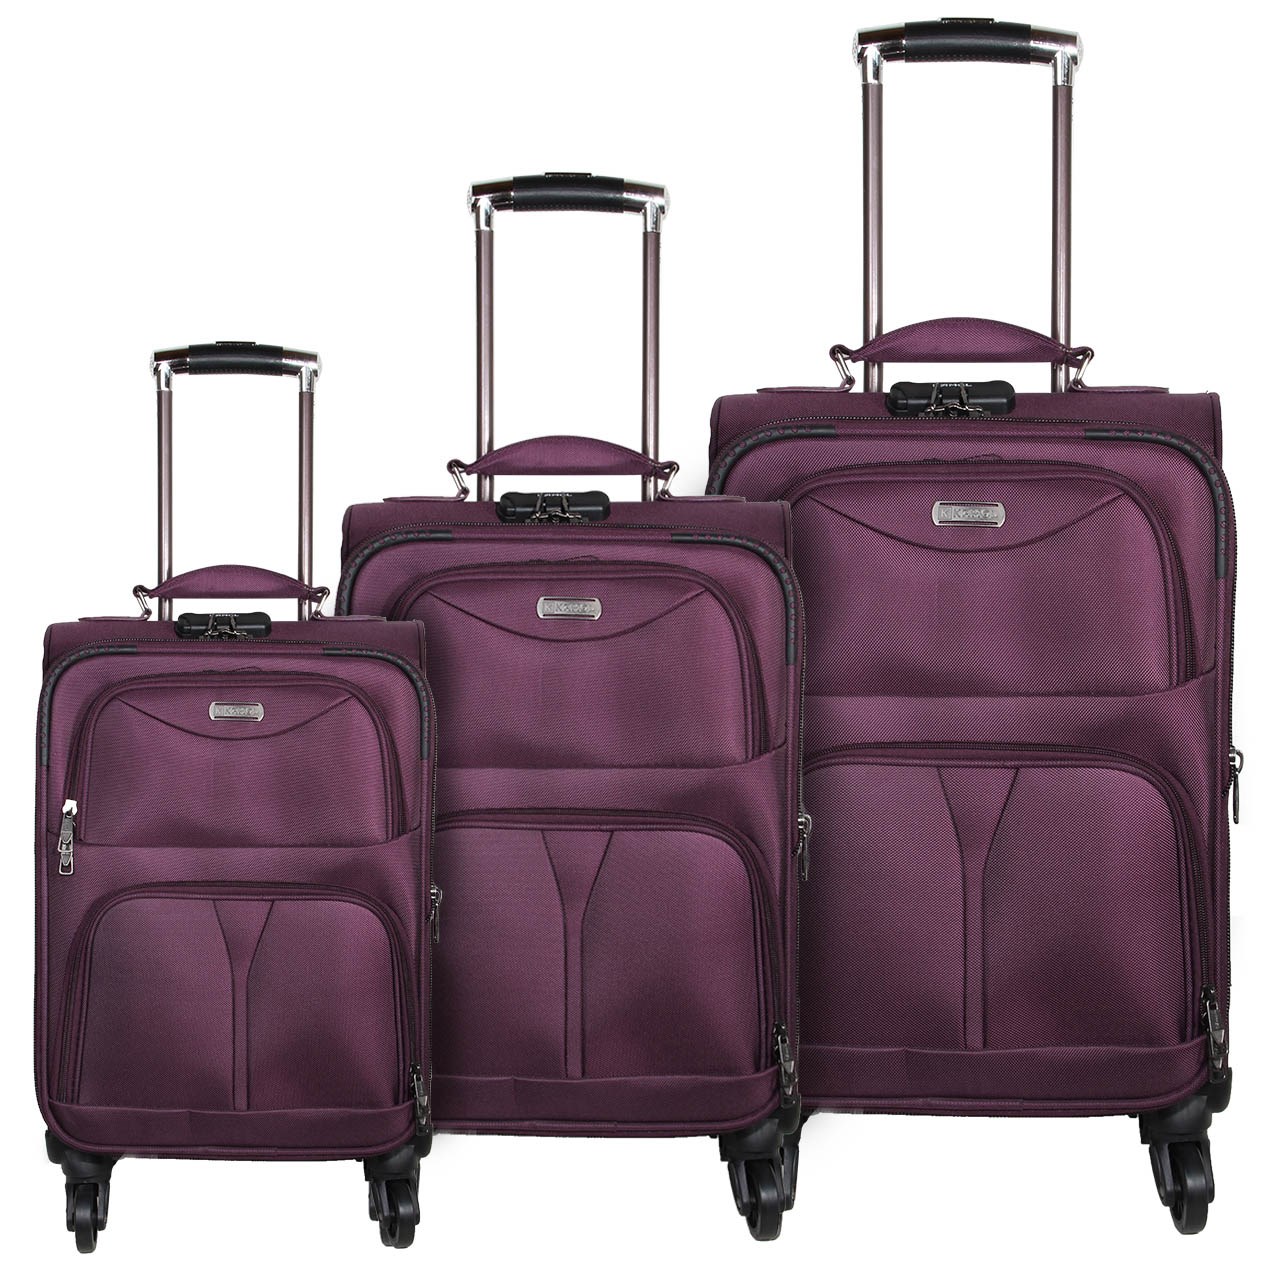 مجموعه سه عددی چمدان کمل مدل11-6040